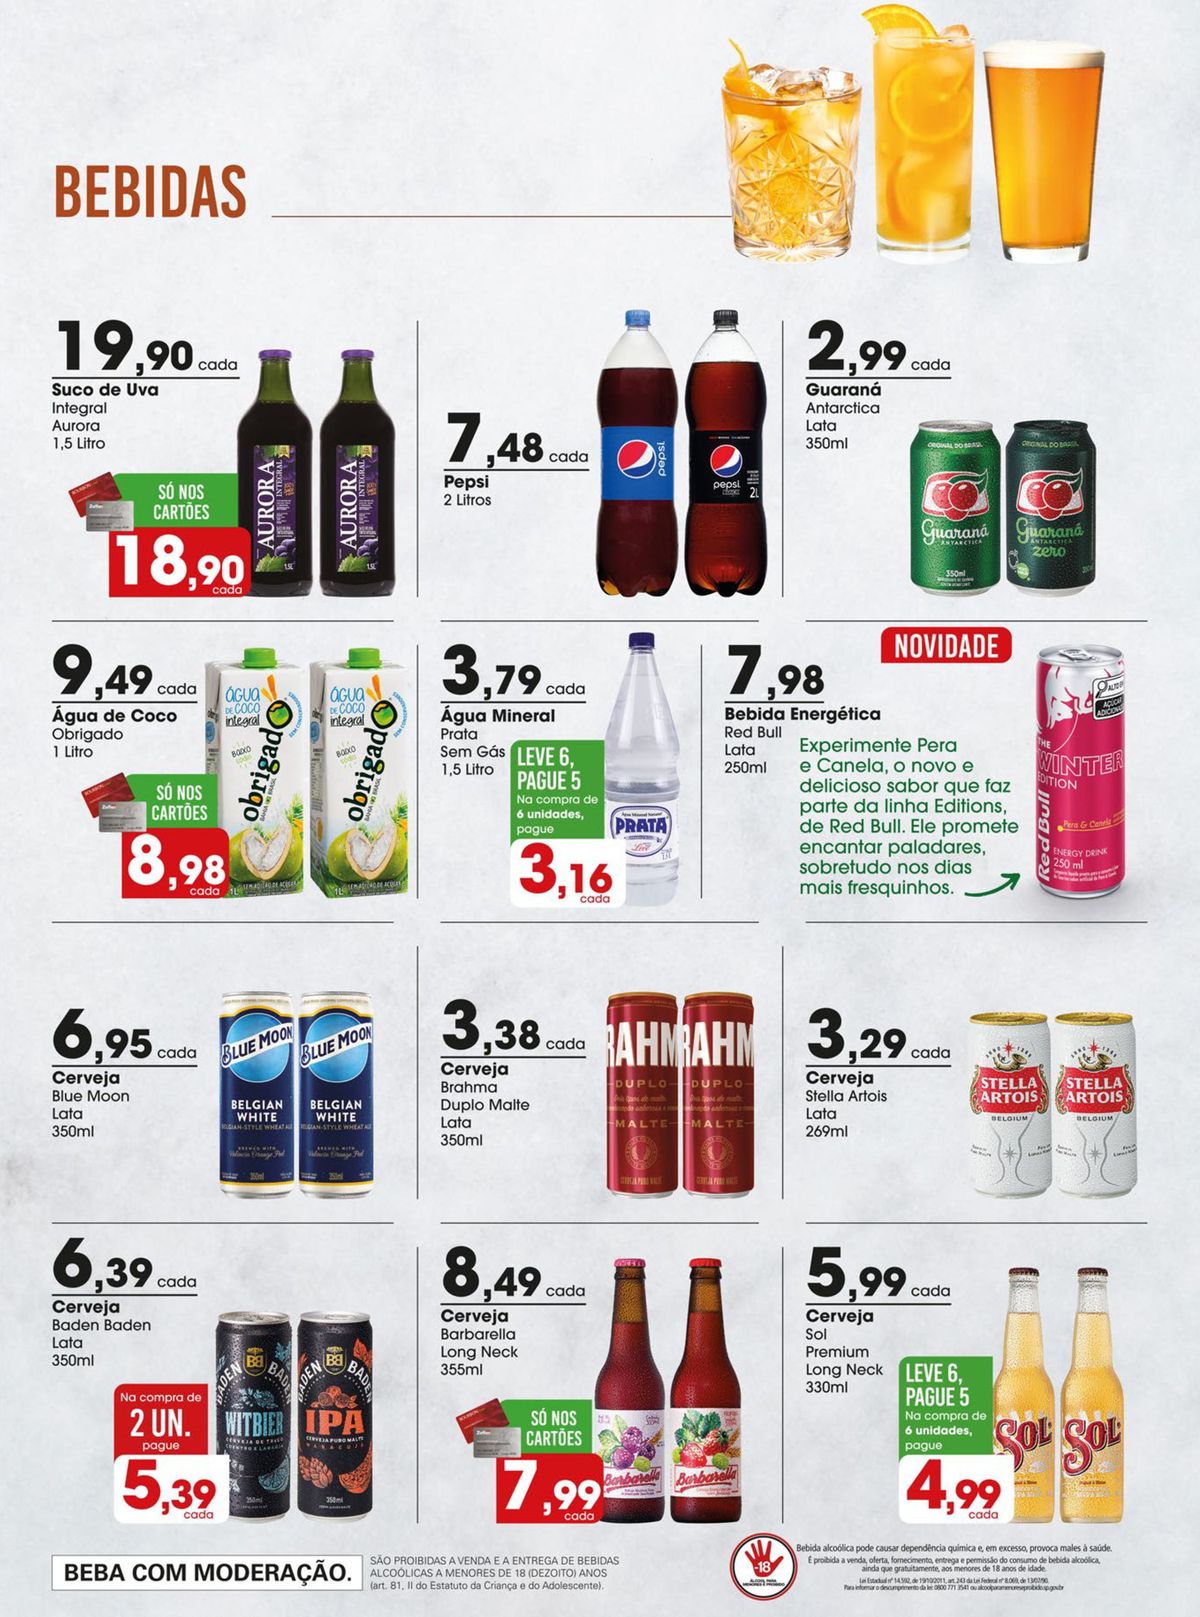 Ofertas em Bebidas no Zaffari Supermercados